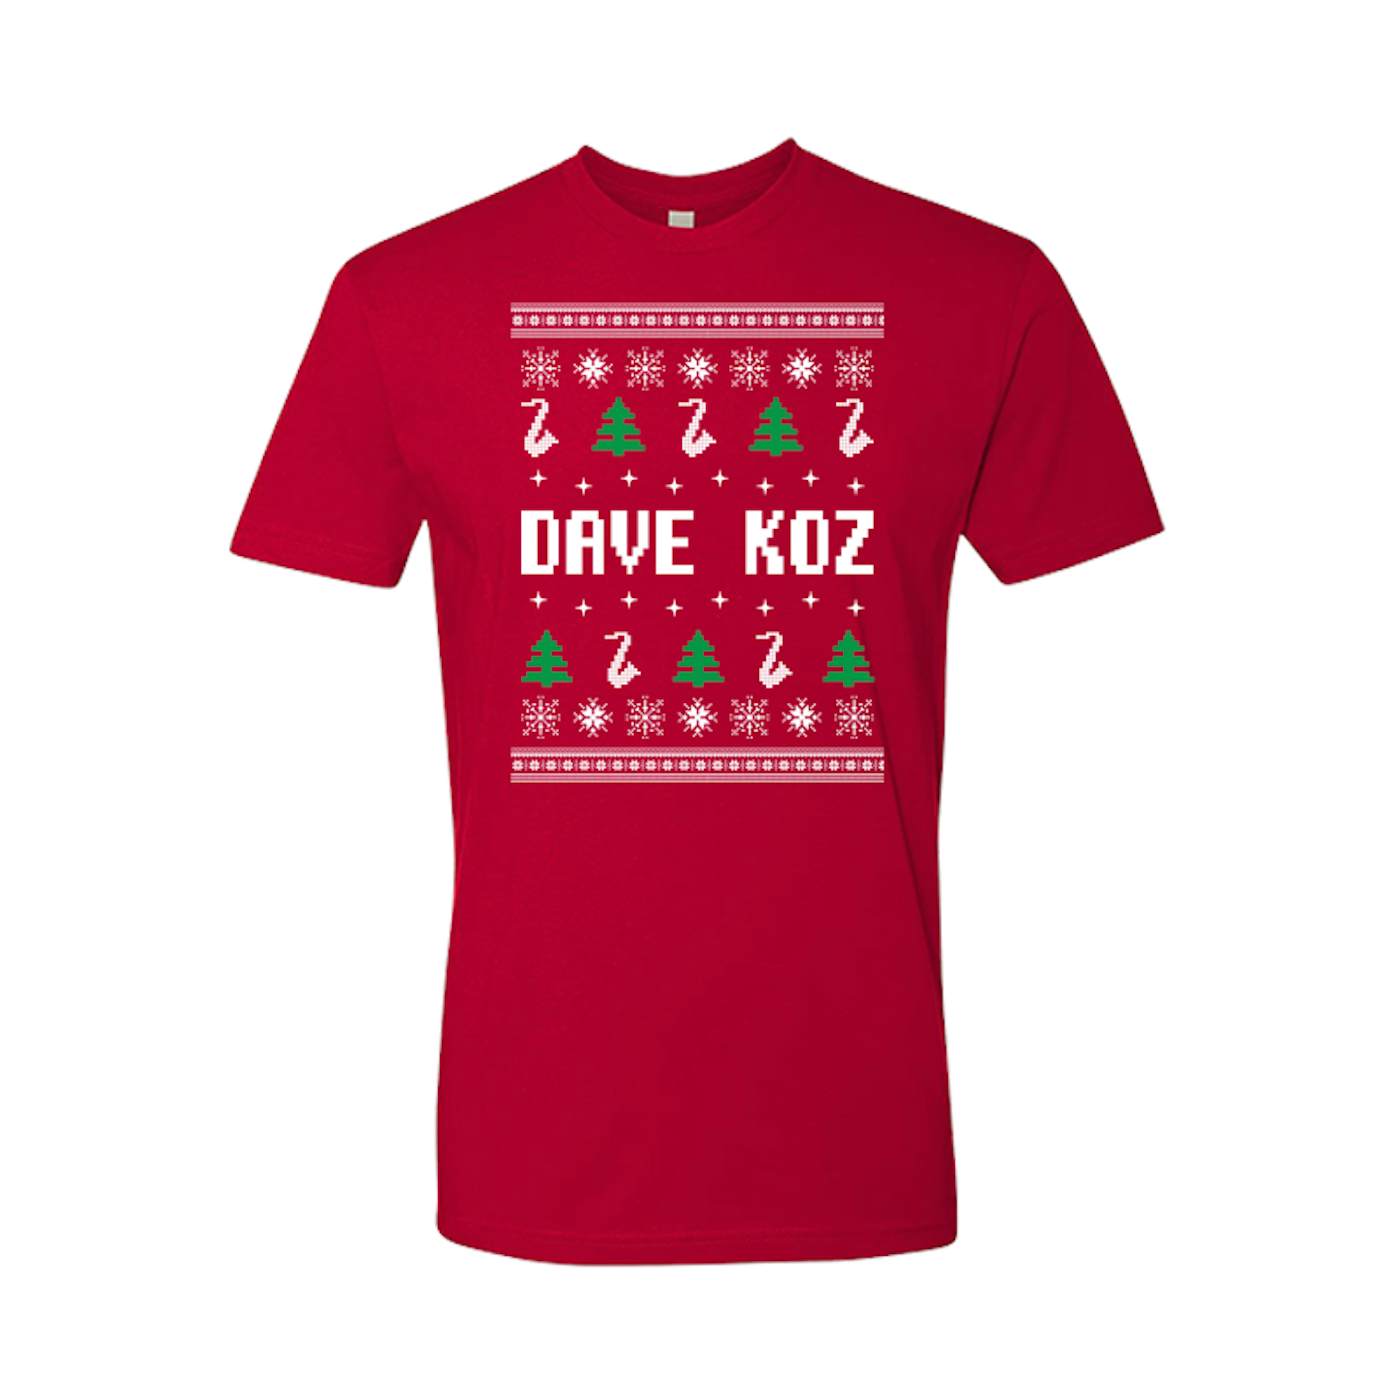 Dave Koz Ugly Christmas T-Shirt